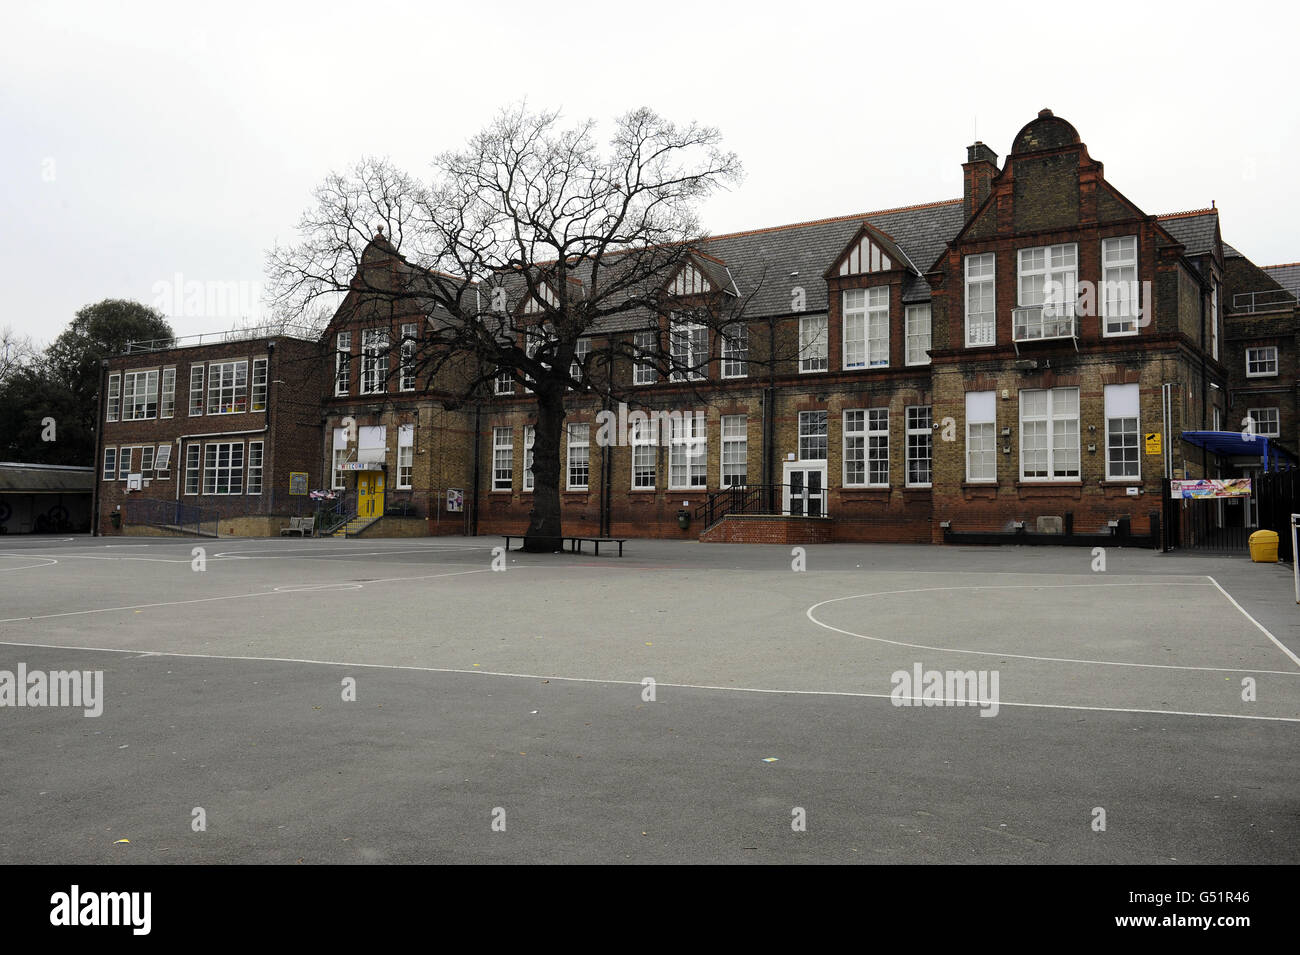 Eine allgemeine Ansicht über die Downhills Primary School, Haringey als das Leitungsorgan der Schule, die den Akademiestatus bekämpft hat, wurde entlassen und ersetzt, bestätigte das Bildungsministerium heute. Stockfoto